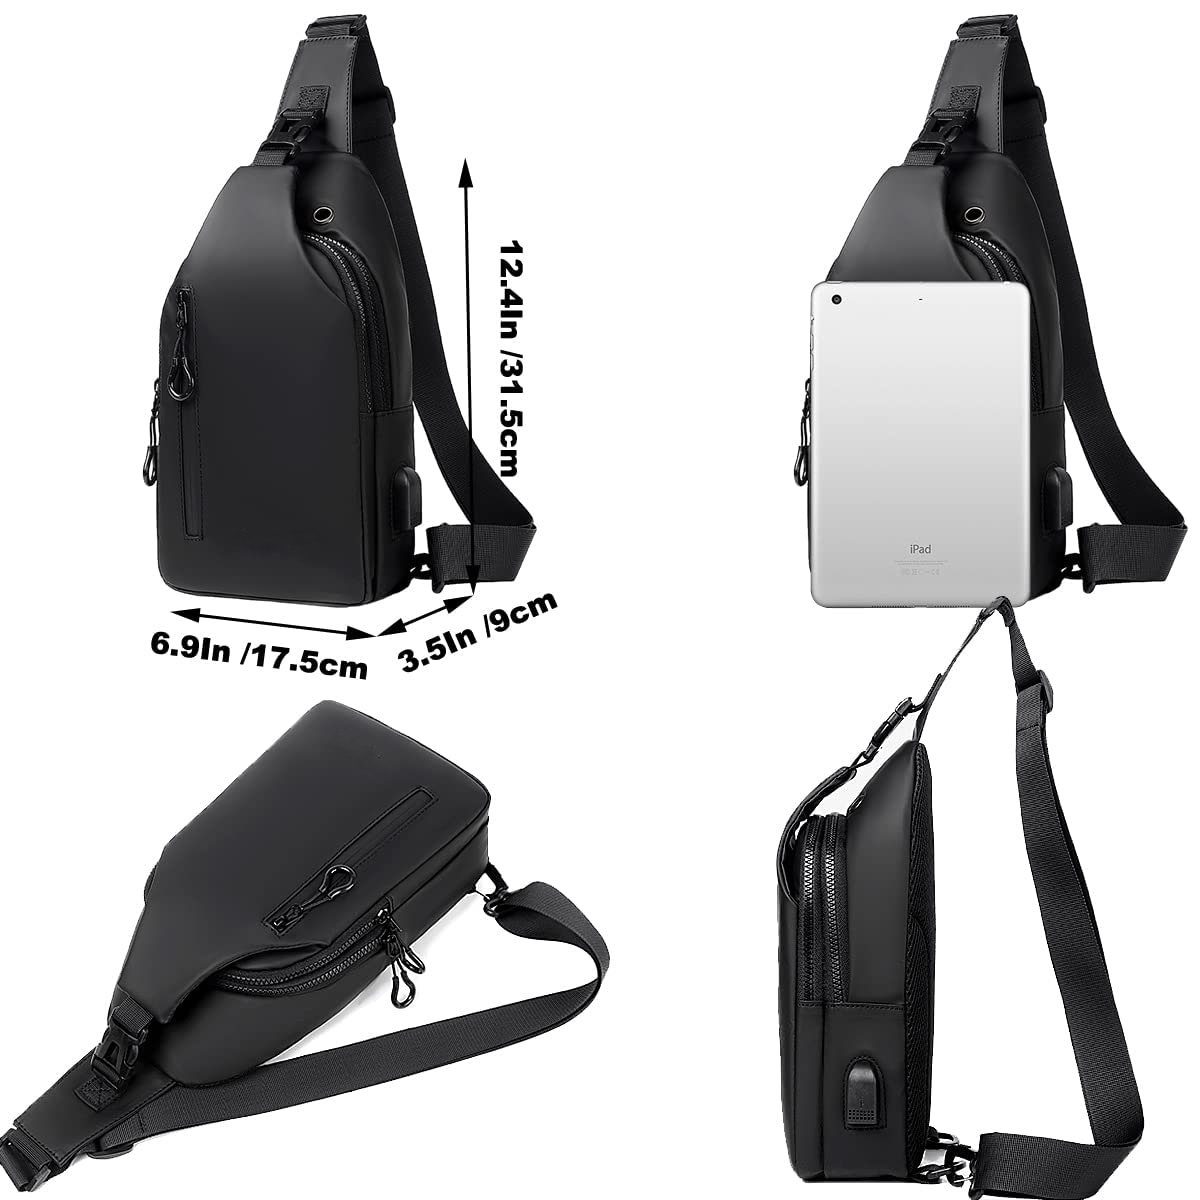 Sling Bag wasserdicht Schwarz USB-Ladeanschluss mit GelldG Umhängetasche Anti-Diebstahl Tasche